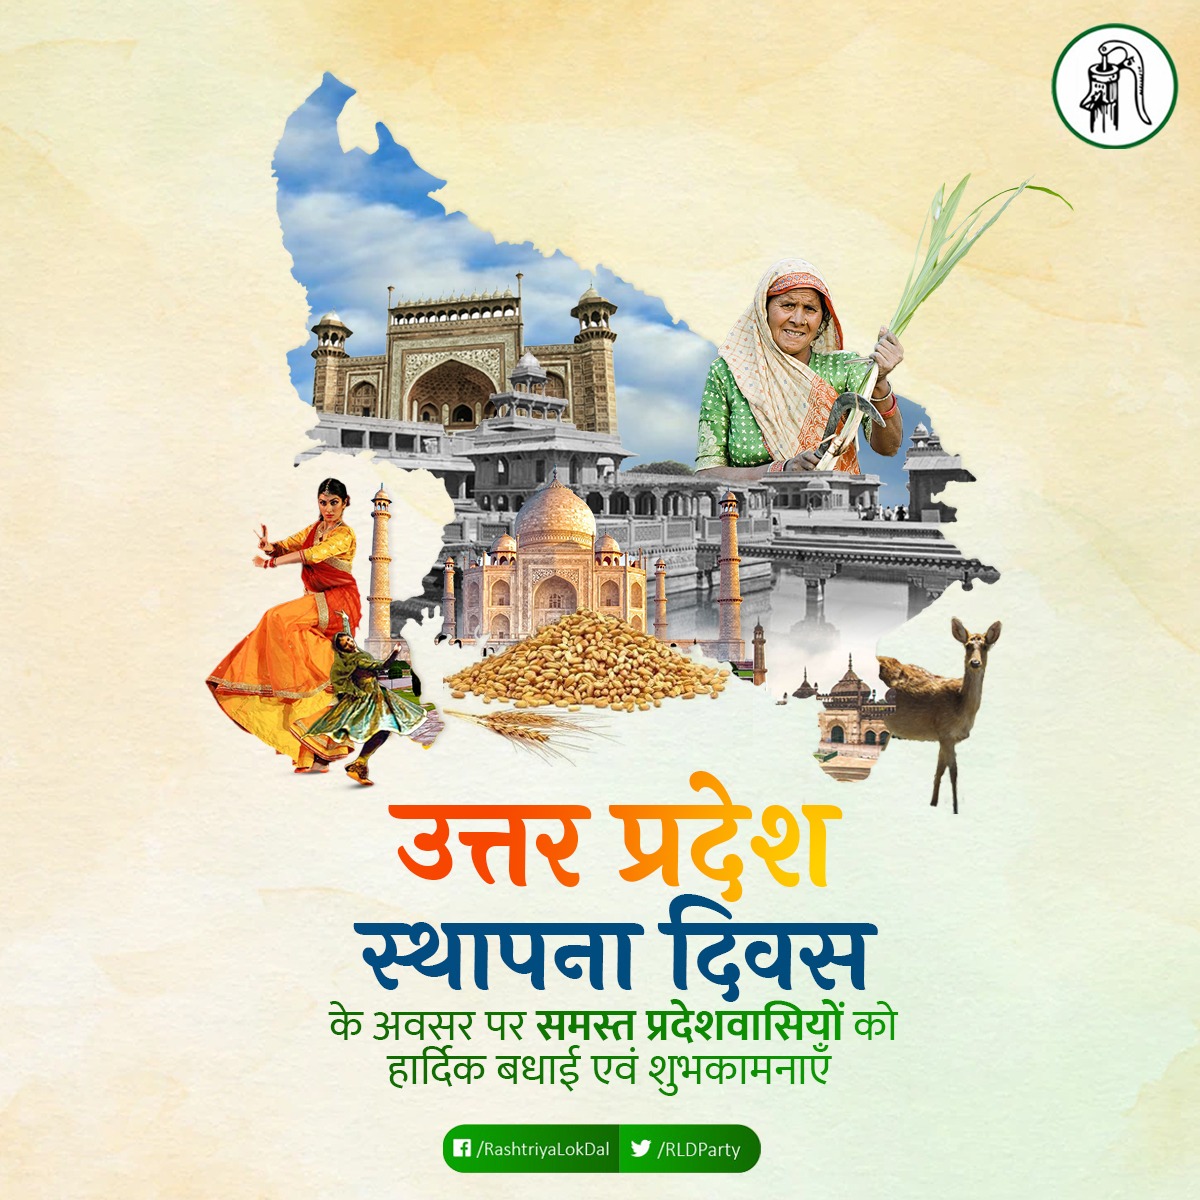 ऐतिहासिक, सांस्कृतिक, धार्मिक, राजनैतिक और कलात्मक क्षेत्र में अग्रणी उत्तर प्रदेश राज्य के स्थापना दिवस पर राज्य के समस्त नागरिकों को हार्दिक शुभकामनाएं। #UttarPradeshSthapnaDivas2023